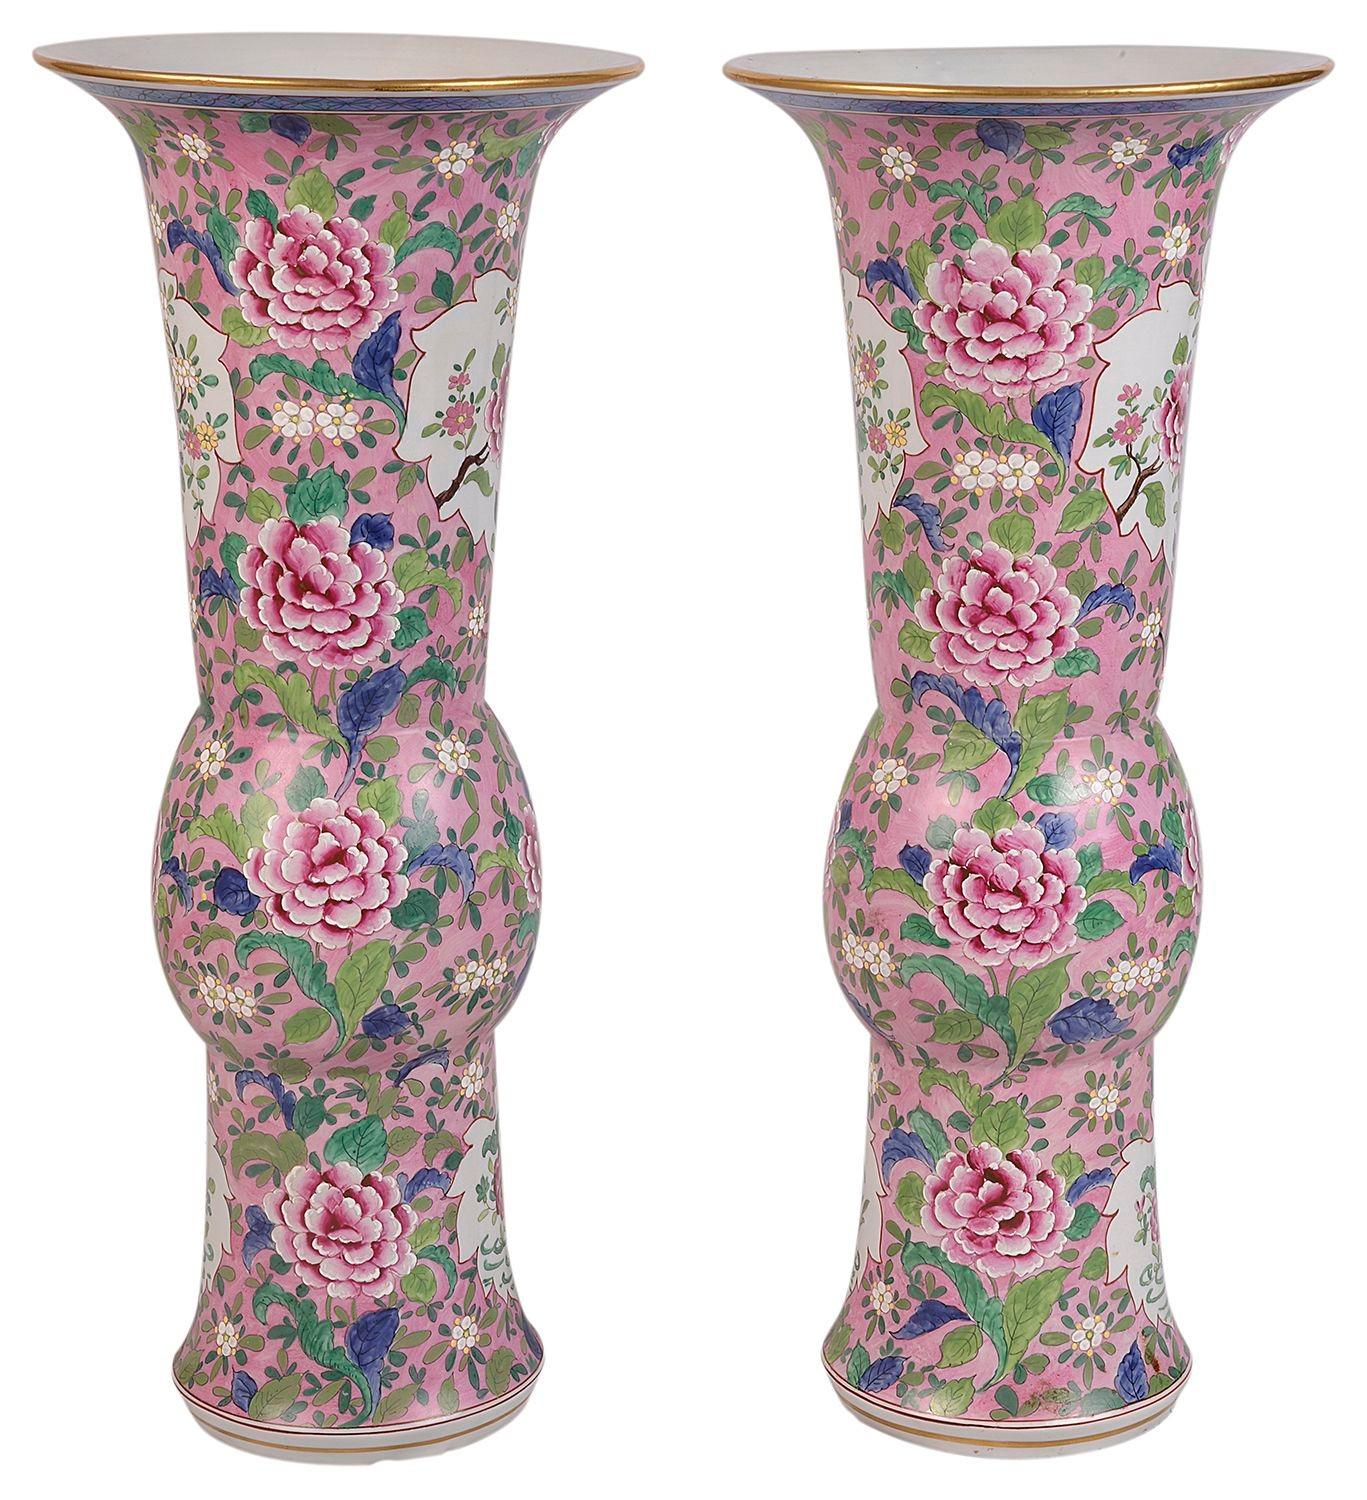 Eine sehr Dekoration und gute Qualität späten 19. Jahrhundert chinesischen Famille Rose Vasen / Lampen. Sie zeigen jeweils wunderschöne exotische Blumen und Blätter. 
 
 
Charge 72. 61601. TNUKZ.